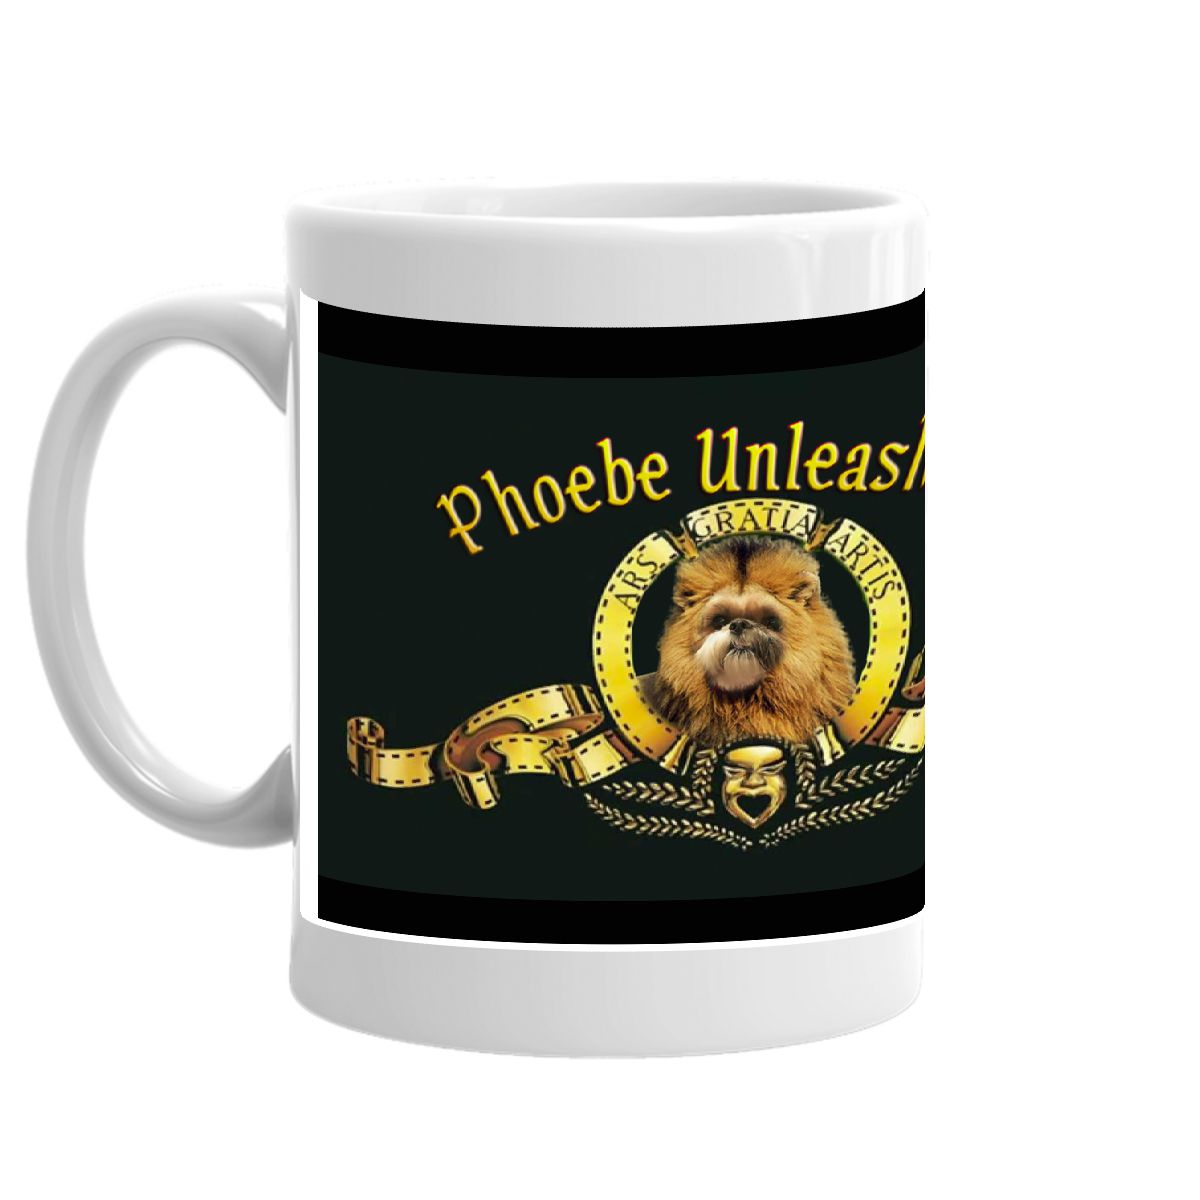 Phoebe Lion Double Roar Mug